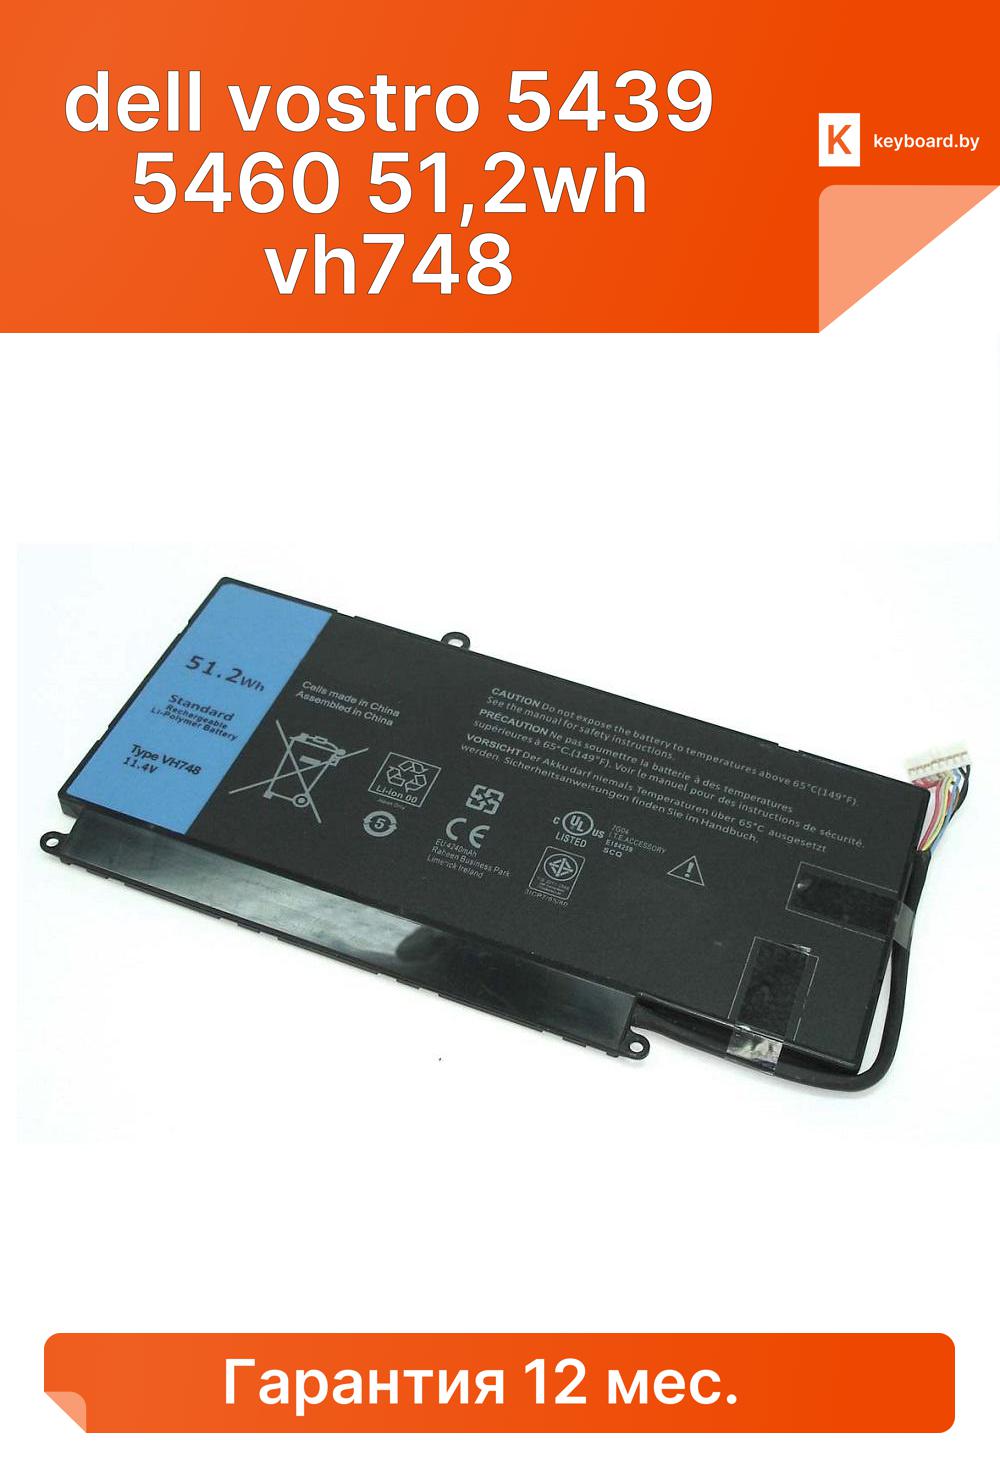 Аккумуляторная батарея для ноутбука dell vostro 5439 5460 51,2wh vh748